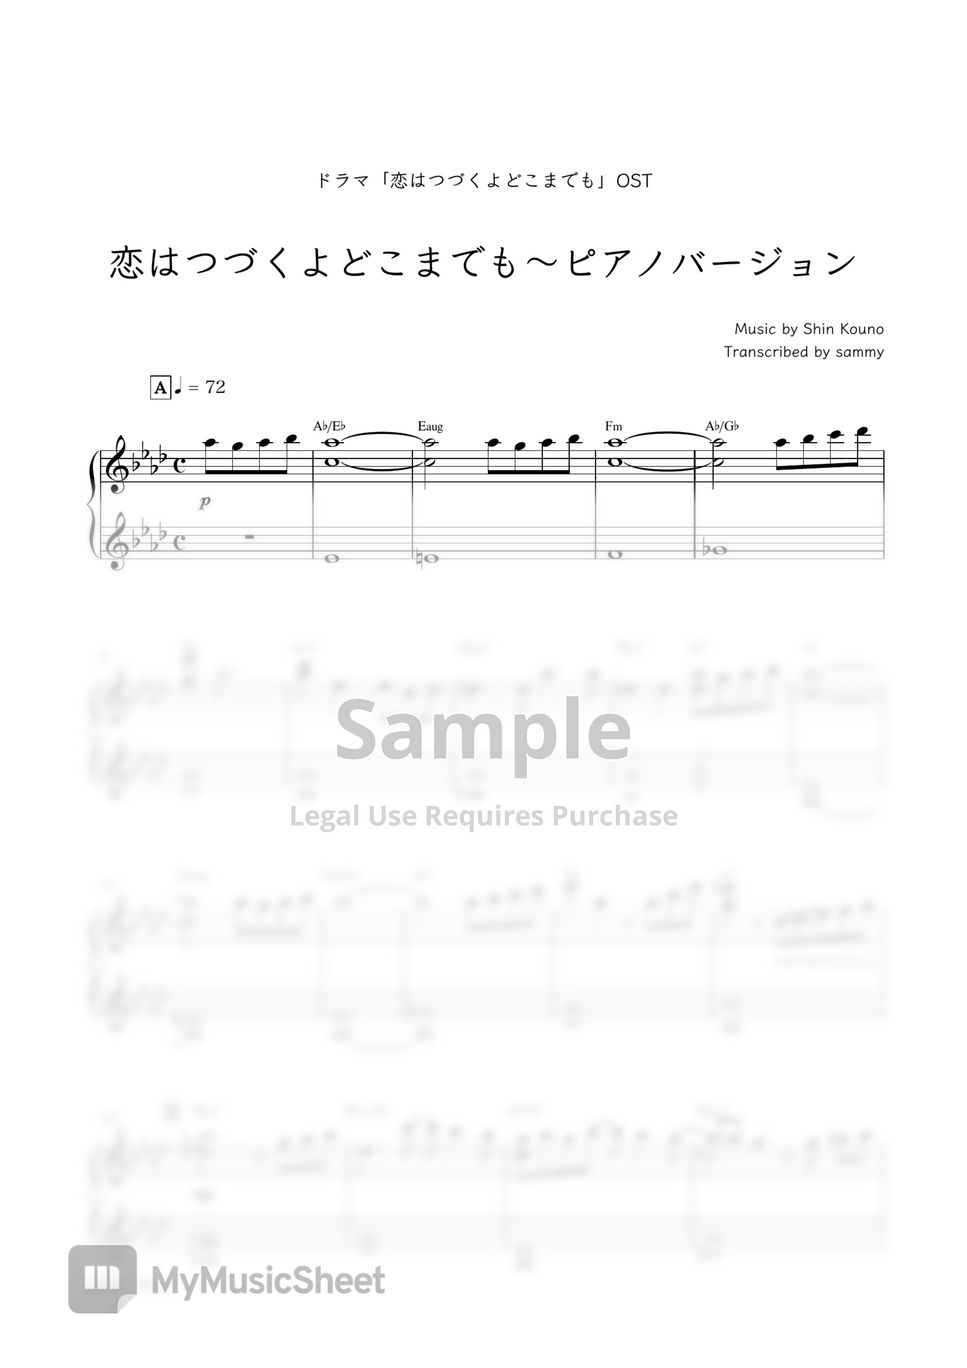 일본드라마《사랑은 계속될 거야 어디까지나 (恋はつづくよどこまでも)》OST - An Incurable Case of Love~Piano Version (恋はつづくよどこまでも〜ピアノバージョン) by sammy